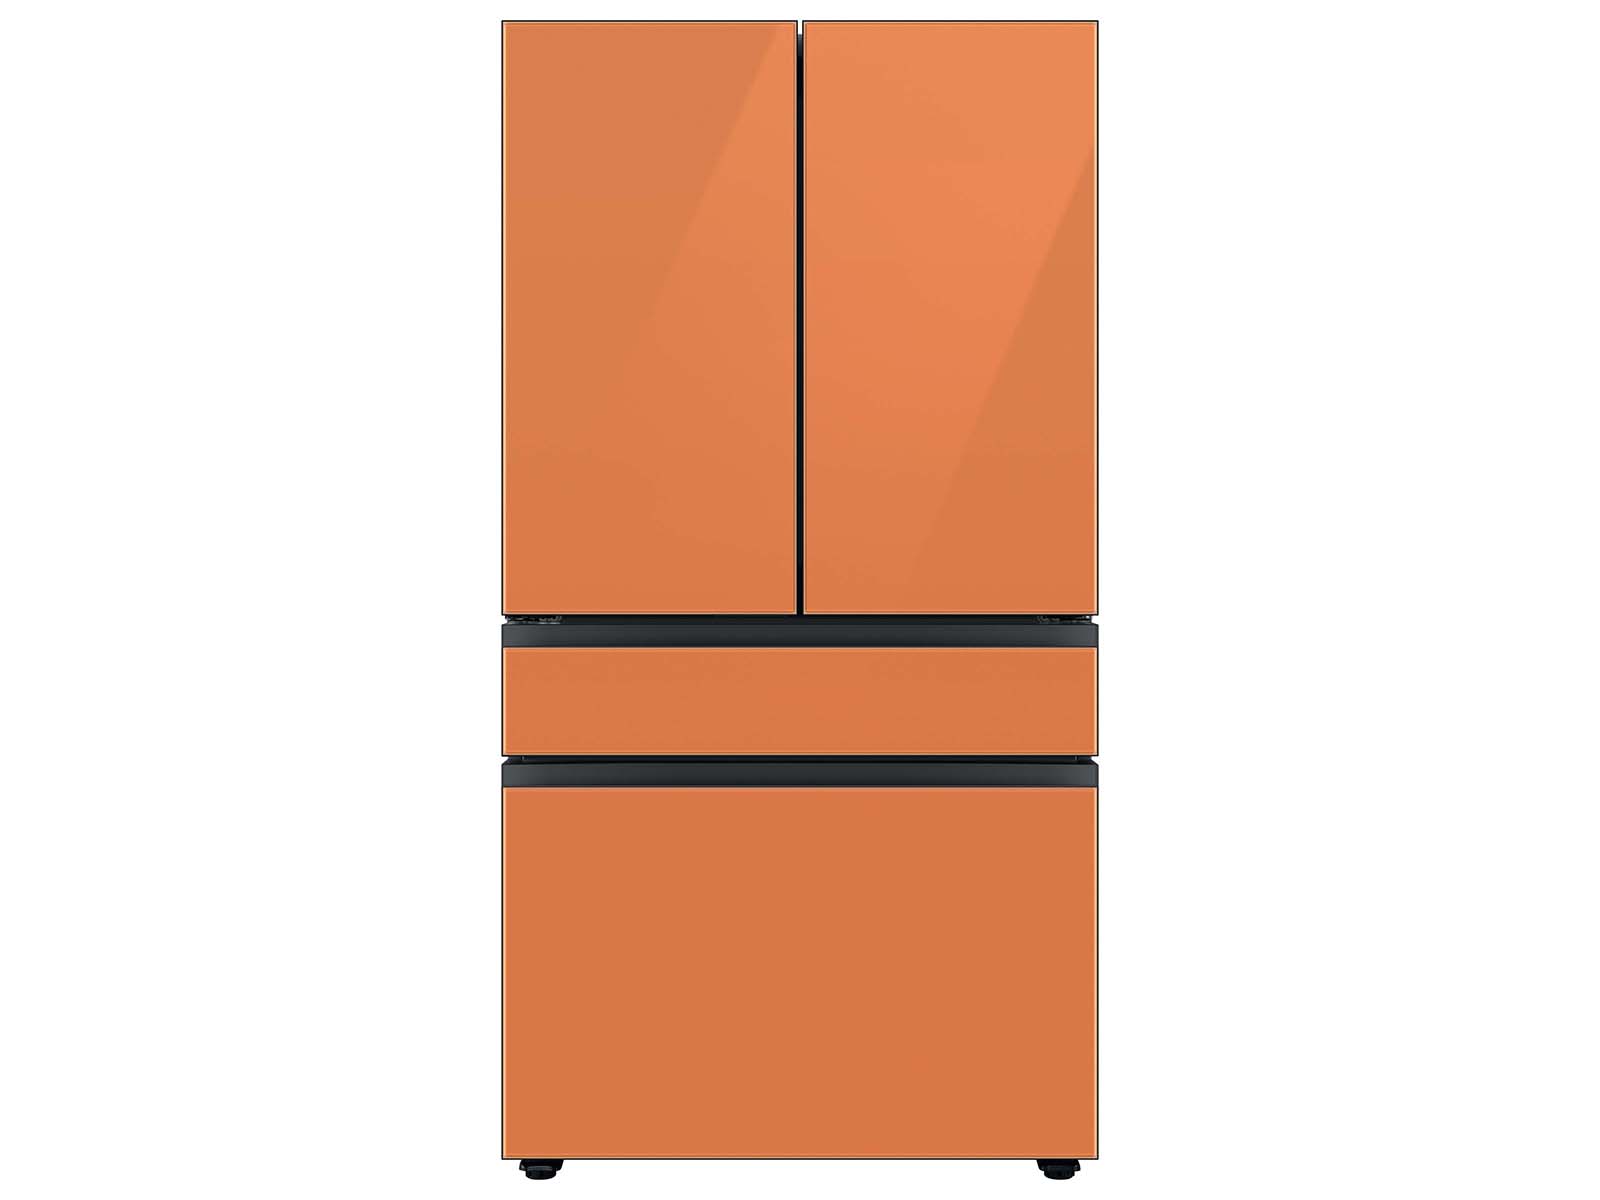 Bespoke 4-Door French Door Refrigerator (29 cu. ft.) with Customizable Door Panel Colors and Beverage Center™ in Clementine Glass